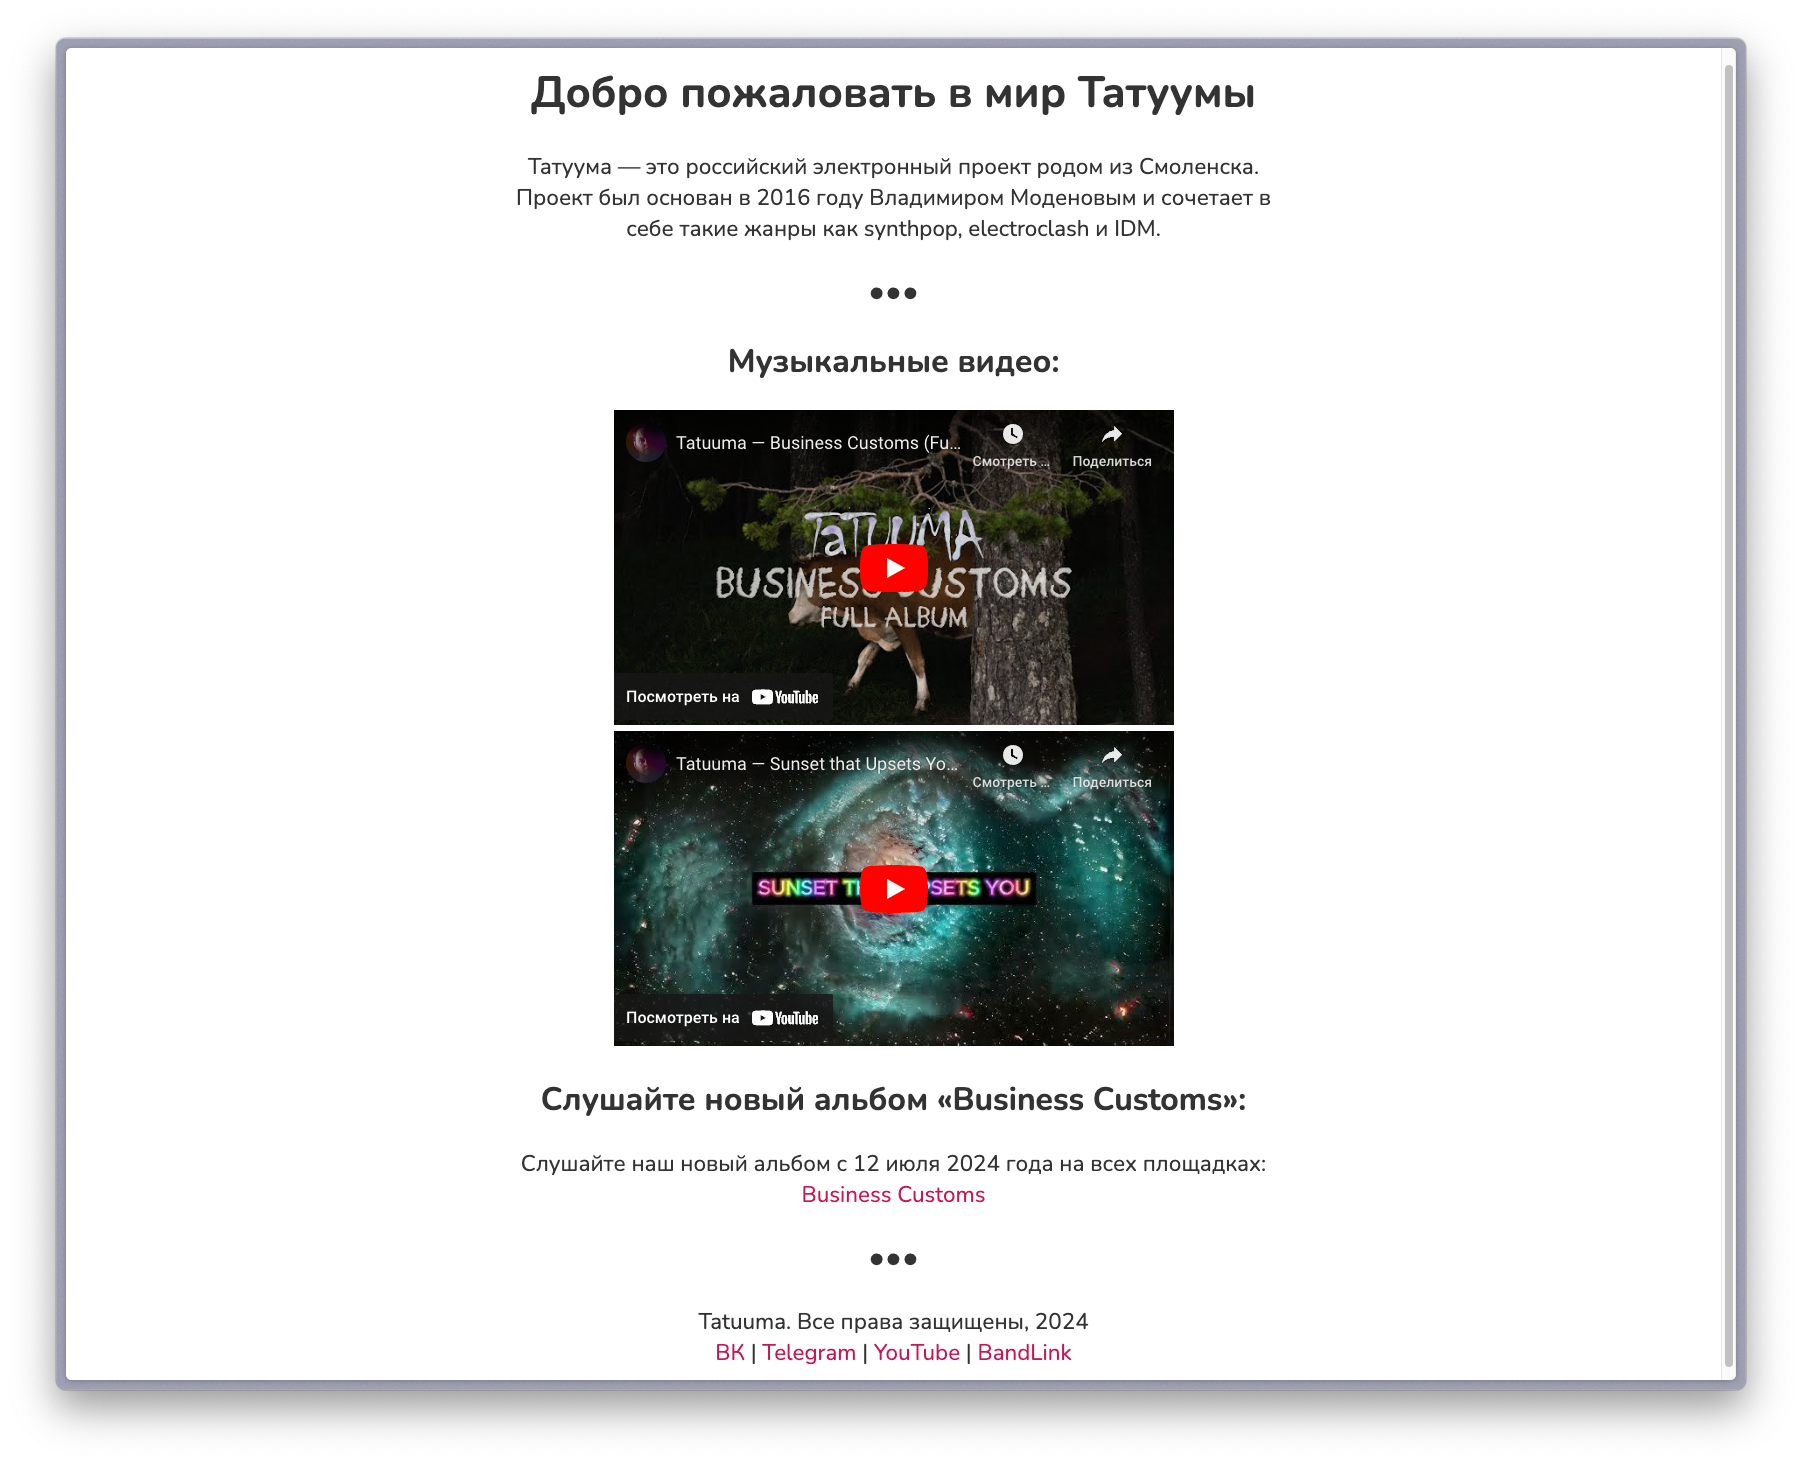 Tatuuma.Ru Website